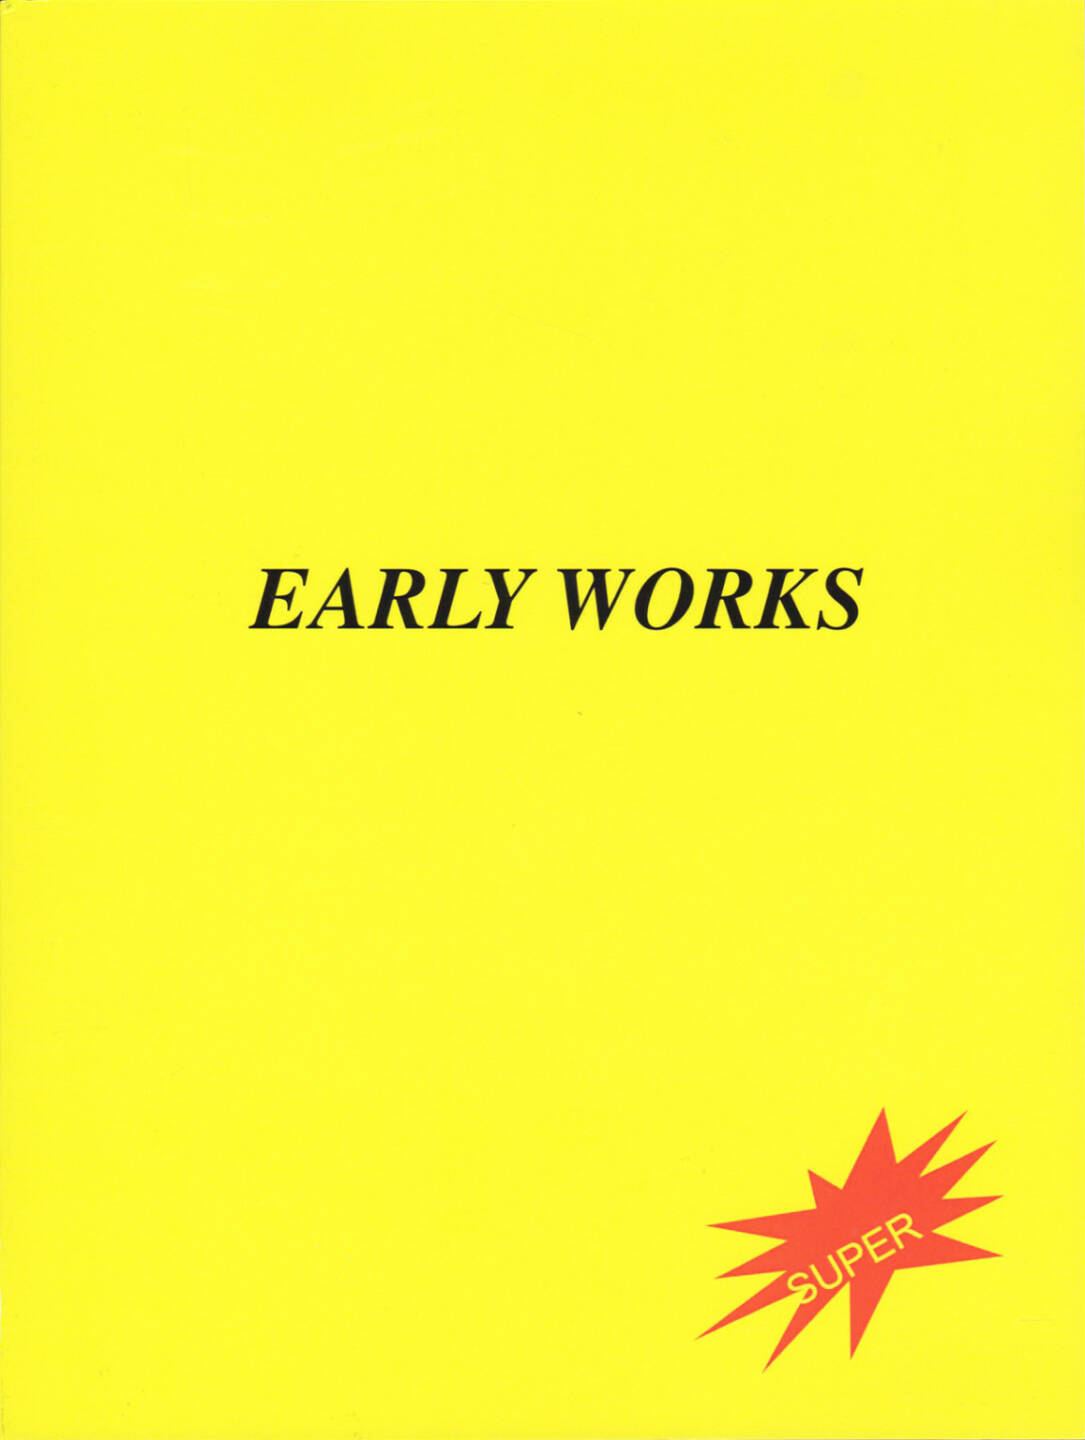 Ivars Gravlejs - Early Works, Self published 2014, Cover - http://josefchladek.com/book/ivars_gravlejs_-_early_works